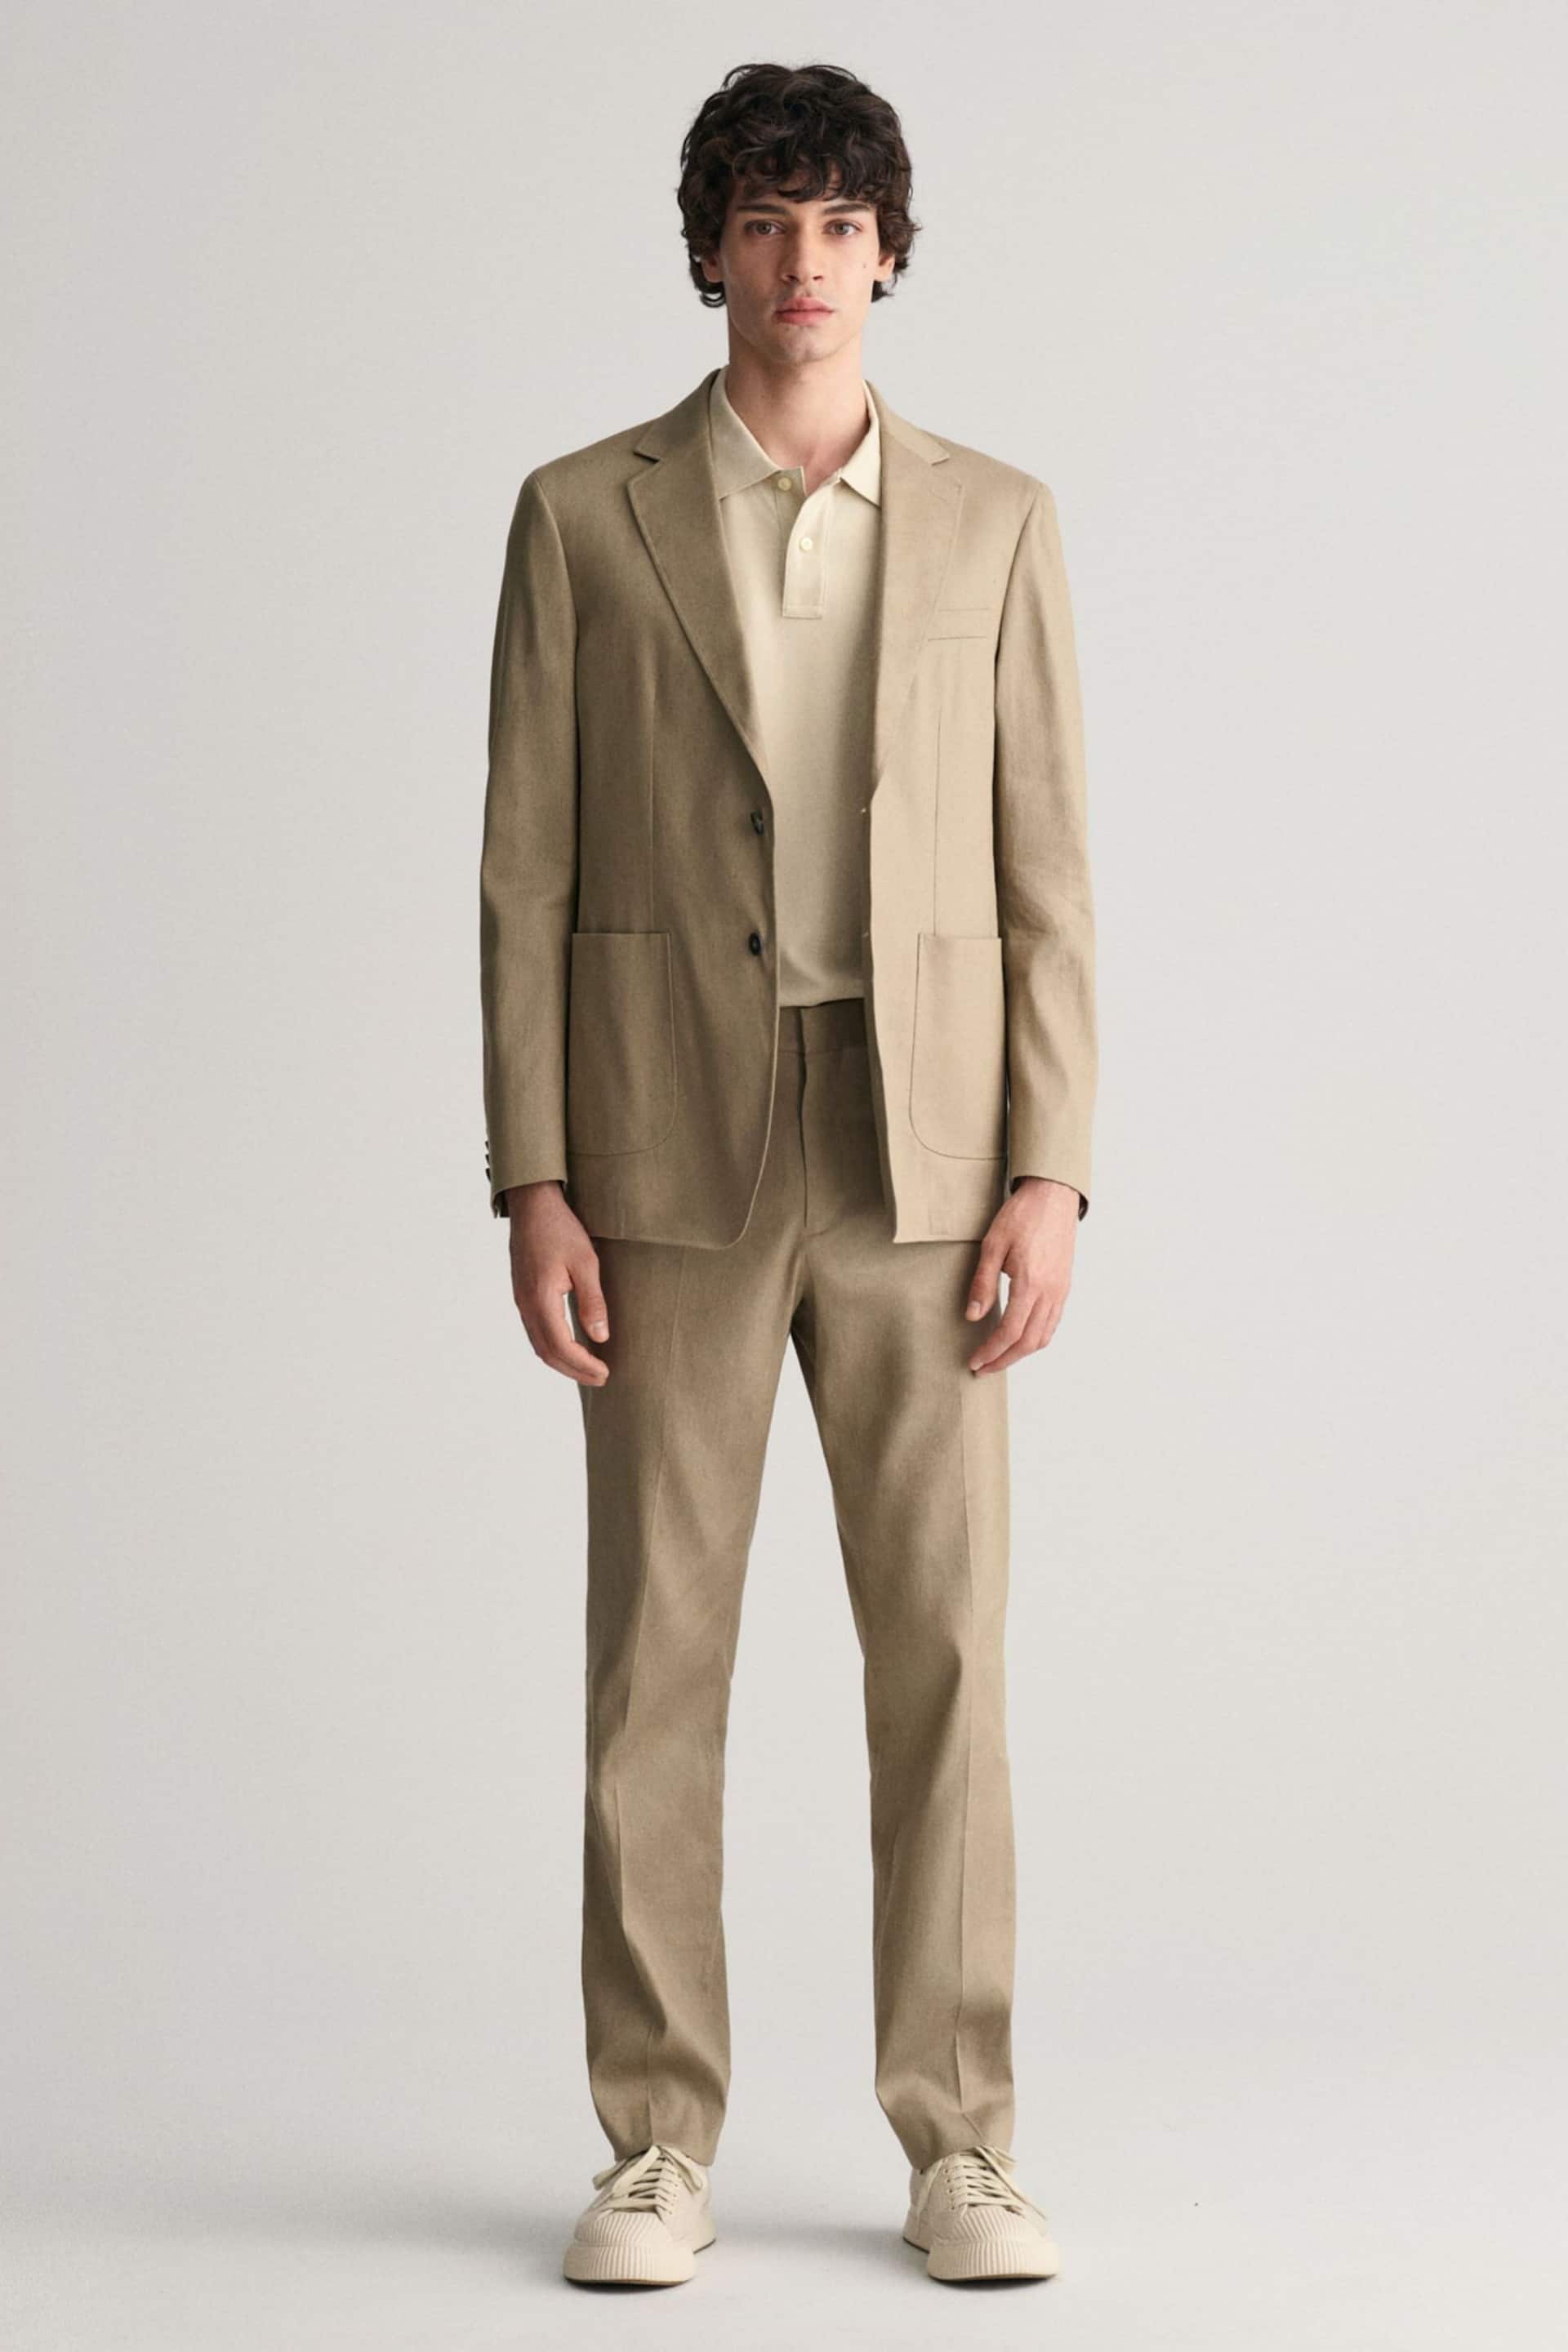 GANT Brown Slim Fit Cotton Linen Blazer - Image 3 of 6